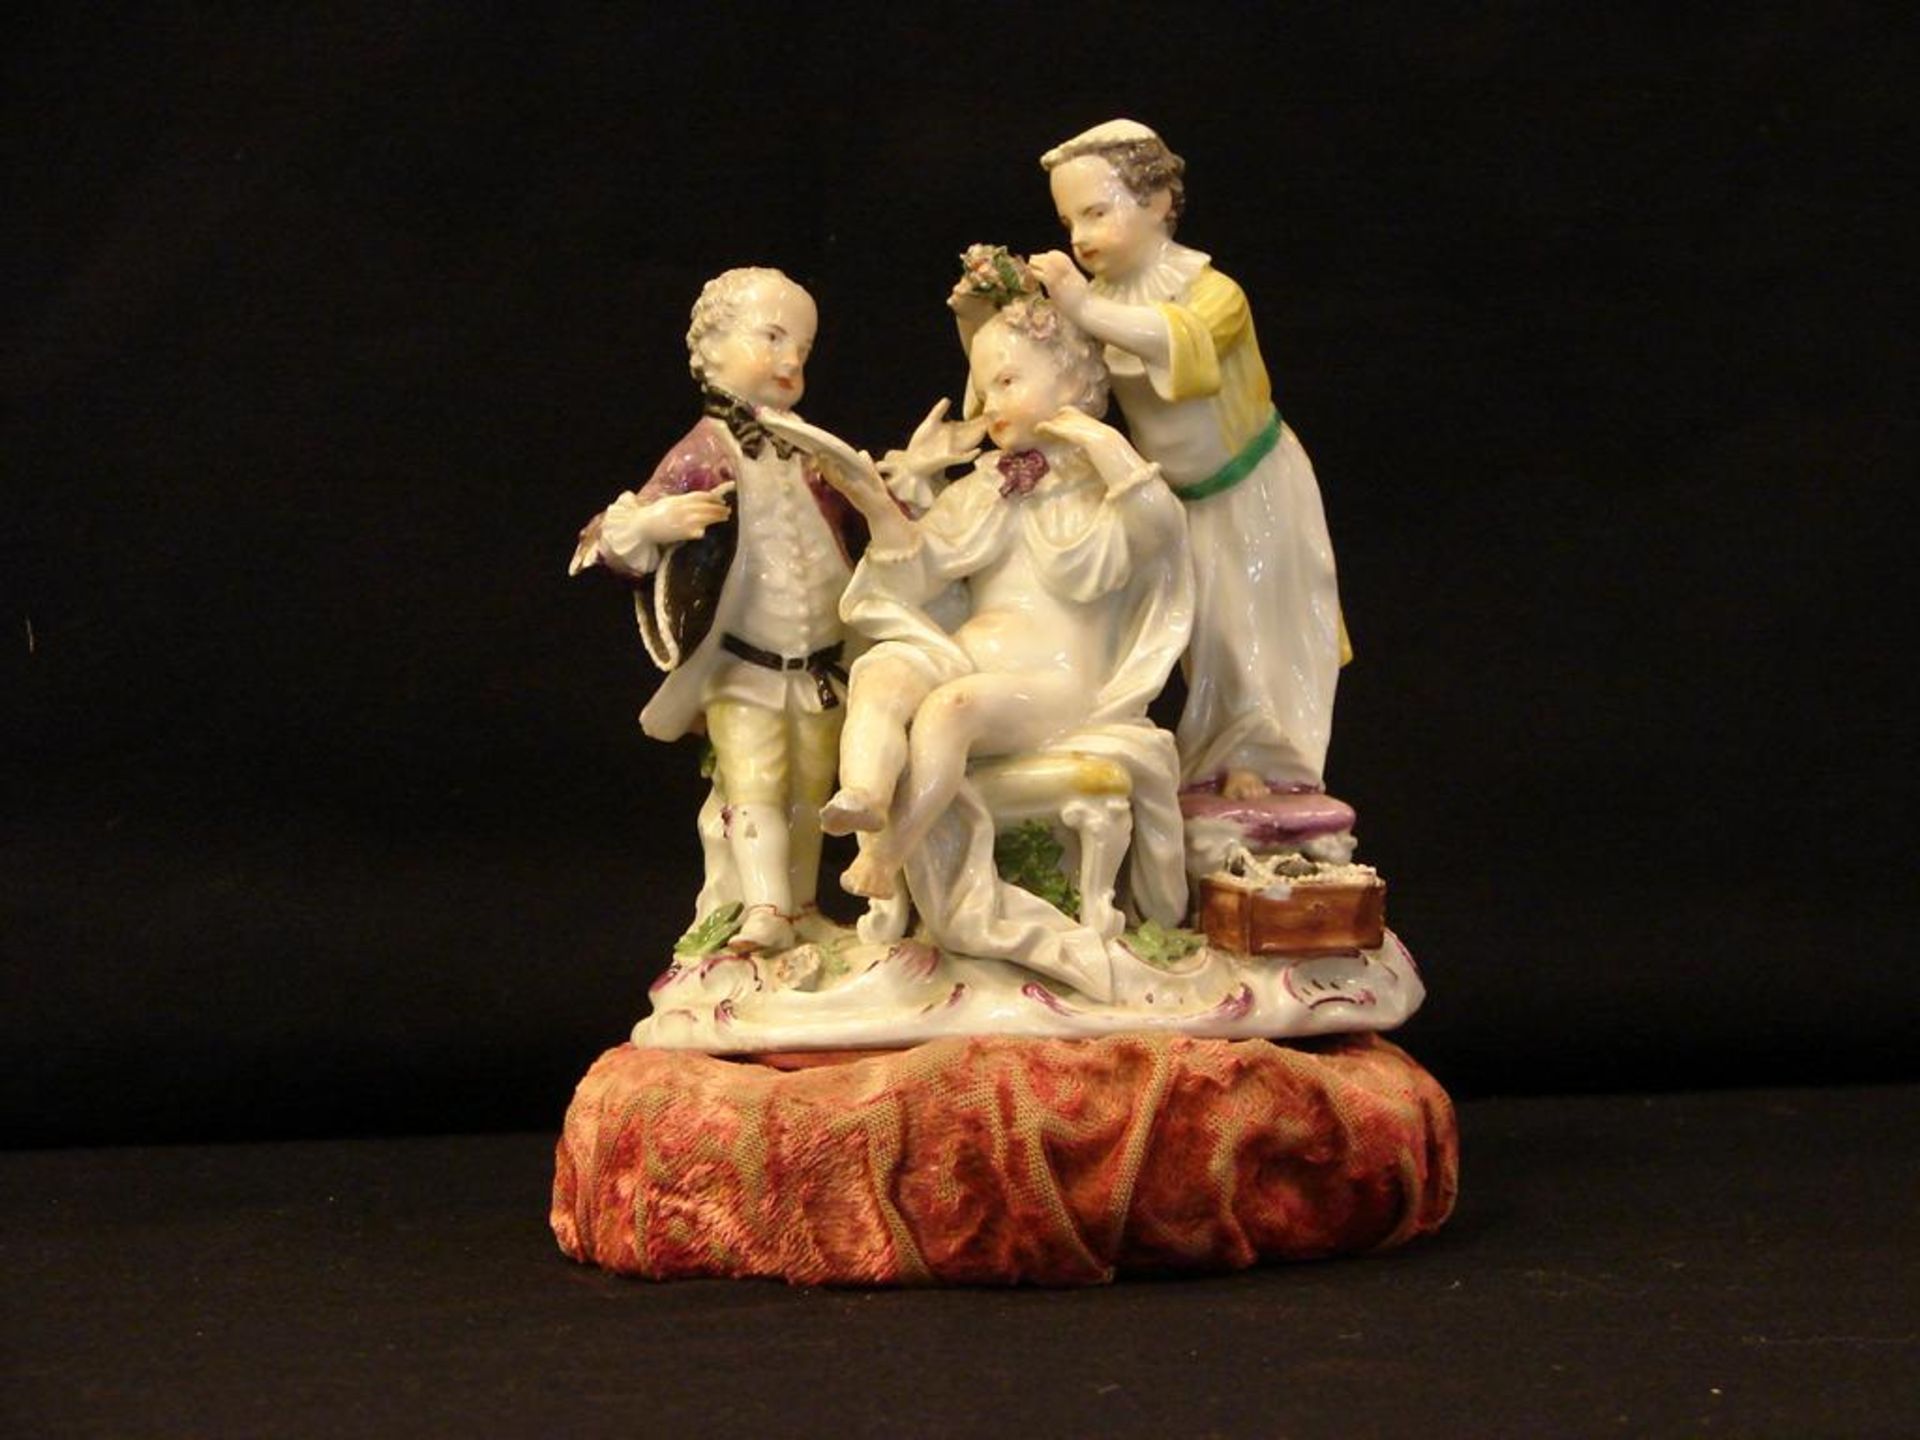 Figurengruppe, Porzellan, Meissen (1 Finger abgebrochen), H. ca. 15 cm, B. 13 cm- - -22.00 % buyer's